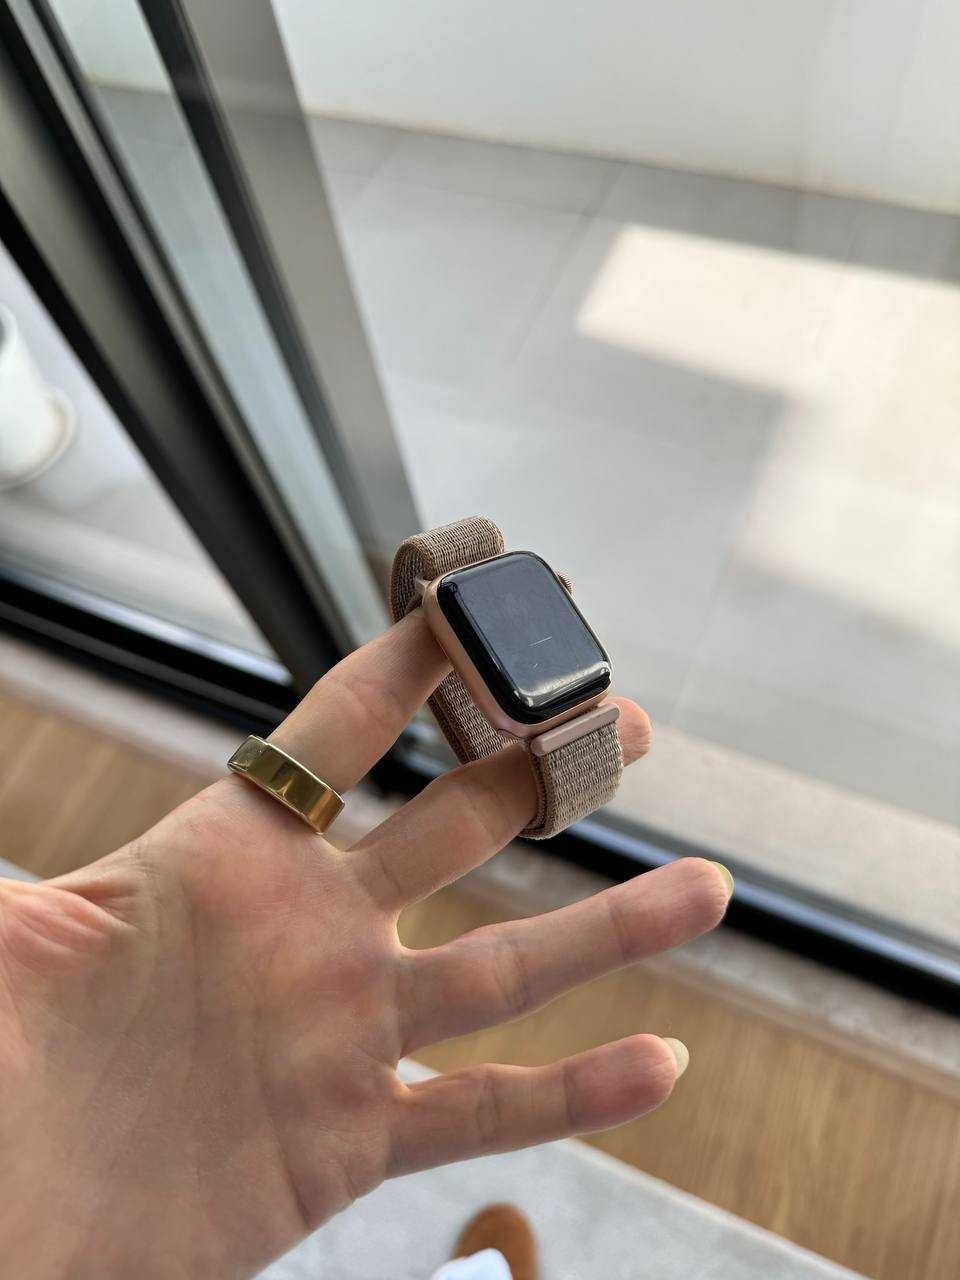 Vendo Smartwatch Apple Watch Series 4 usado - não aceito MBWAY